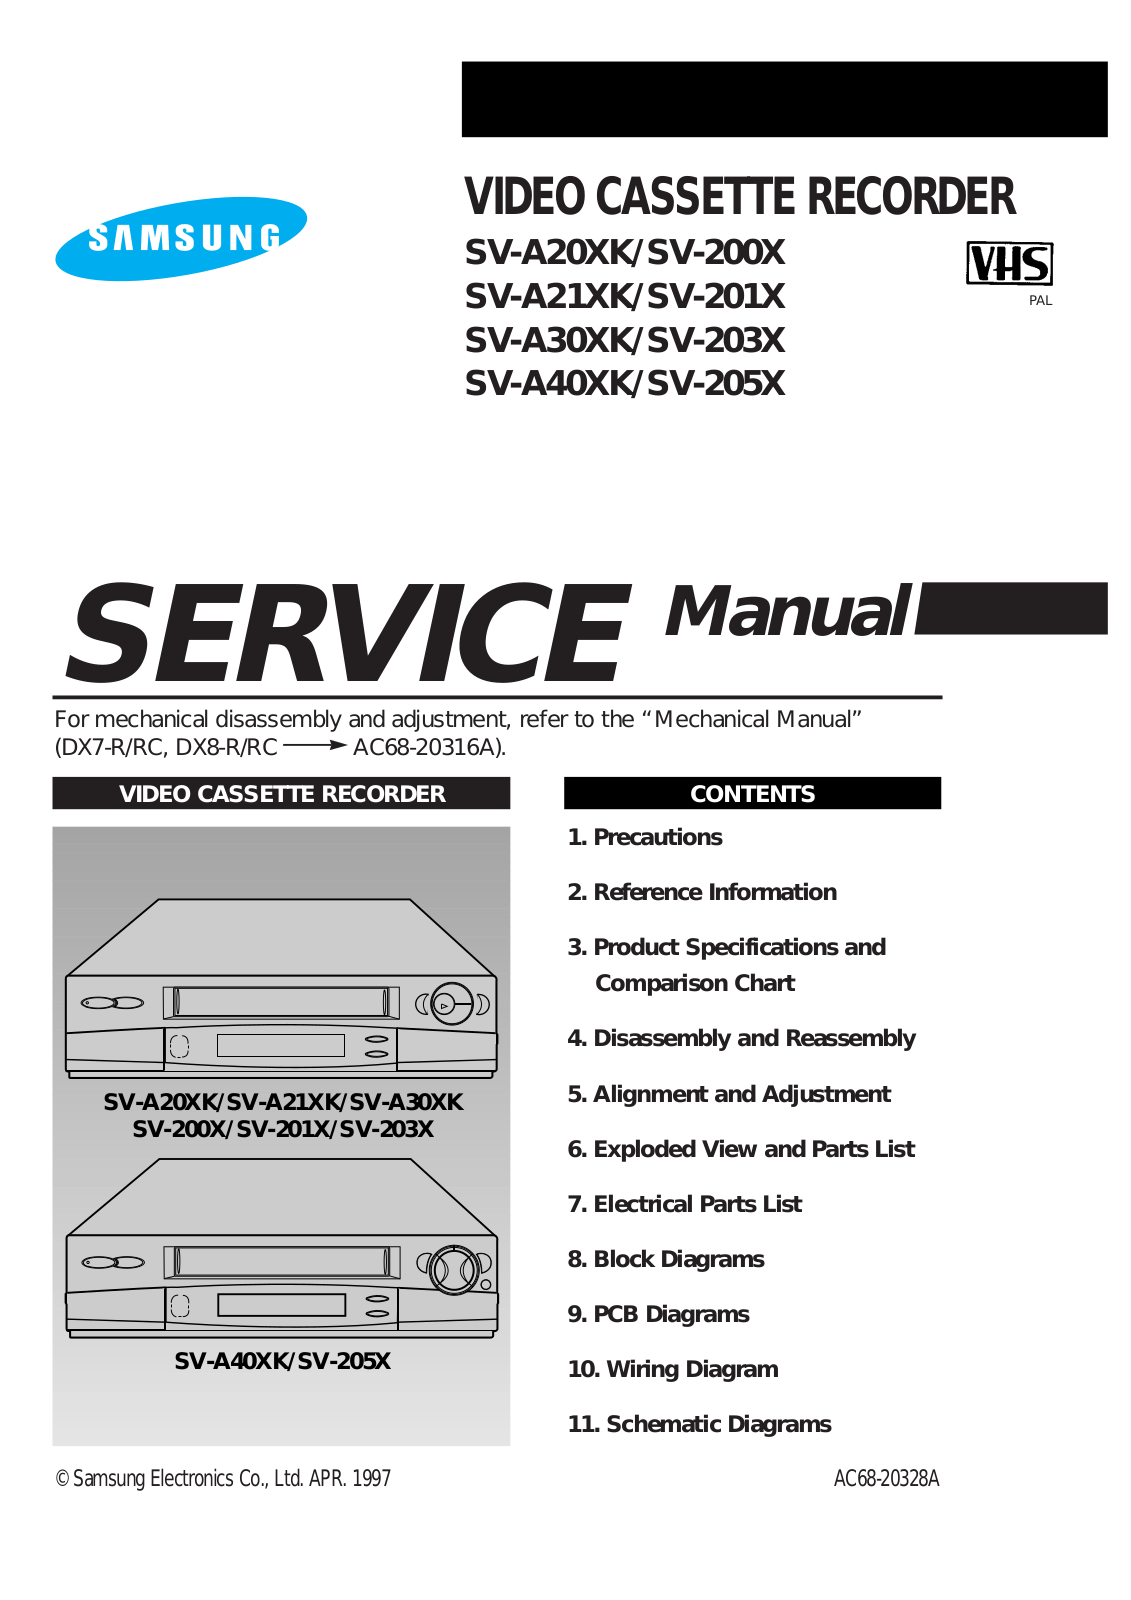 Samsung SV-205X, SV-A40XK, SV-203X, SV-A30XK, SV-201X Service Manual